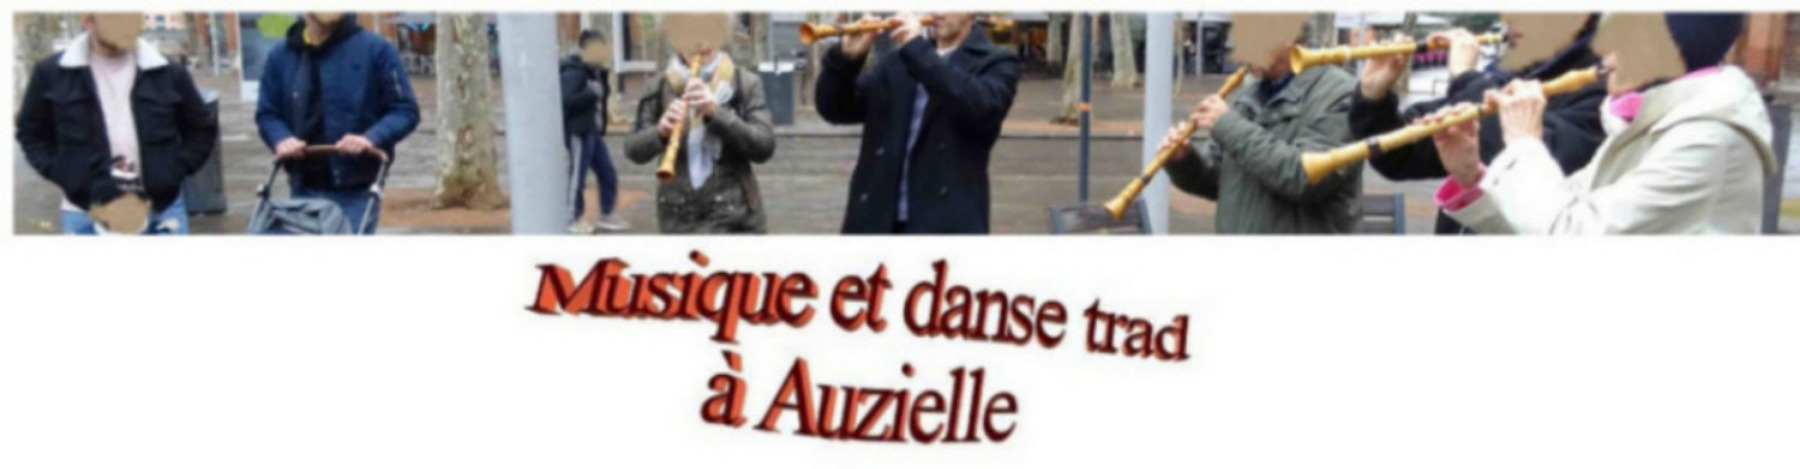 Balanquet - Musique et danse traditionnelle à Auzielle